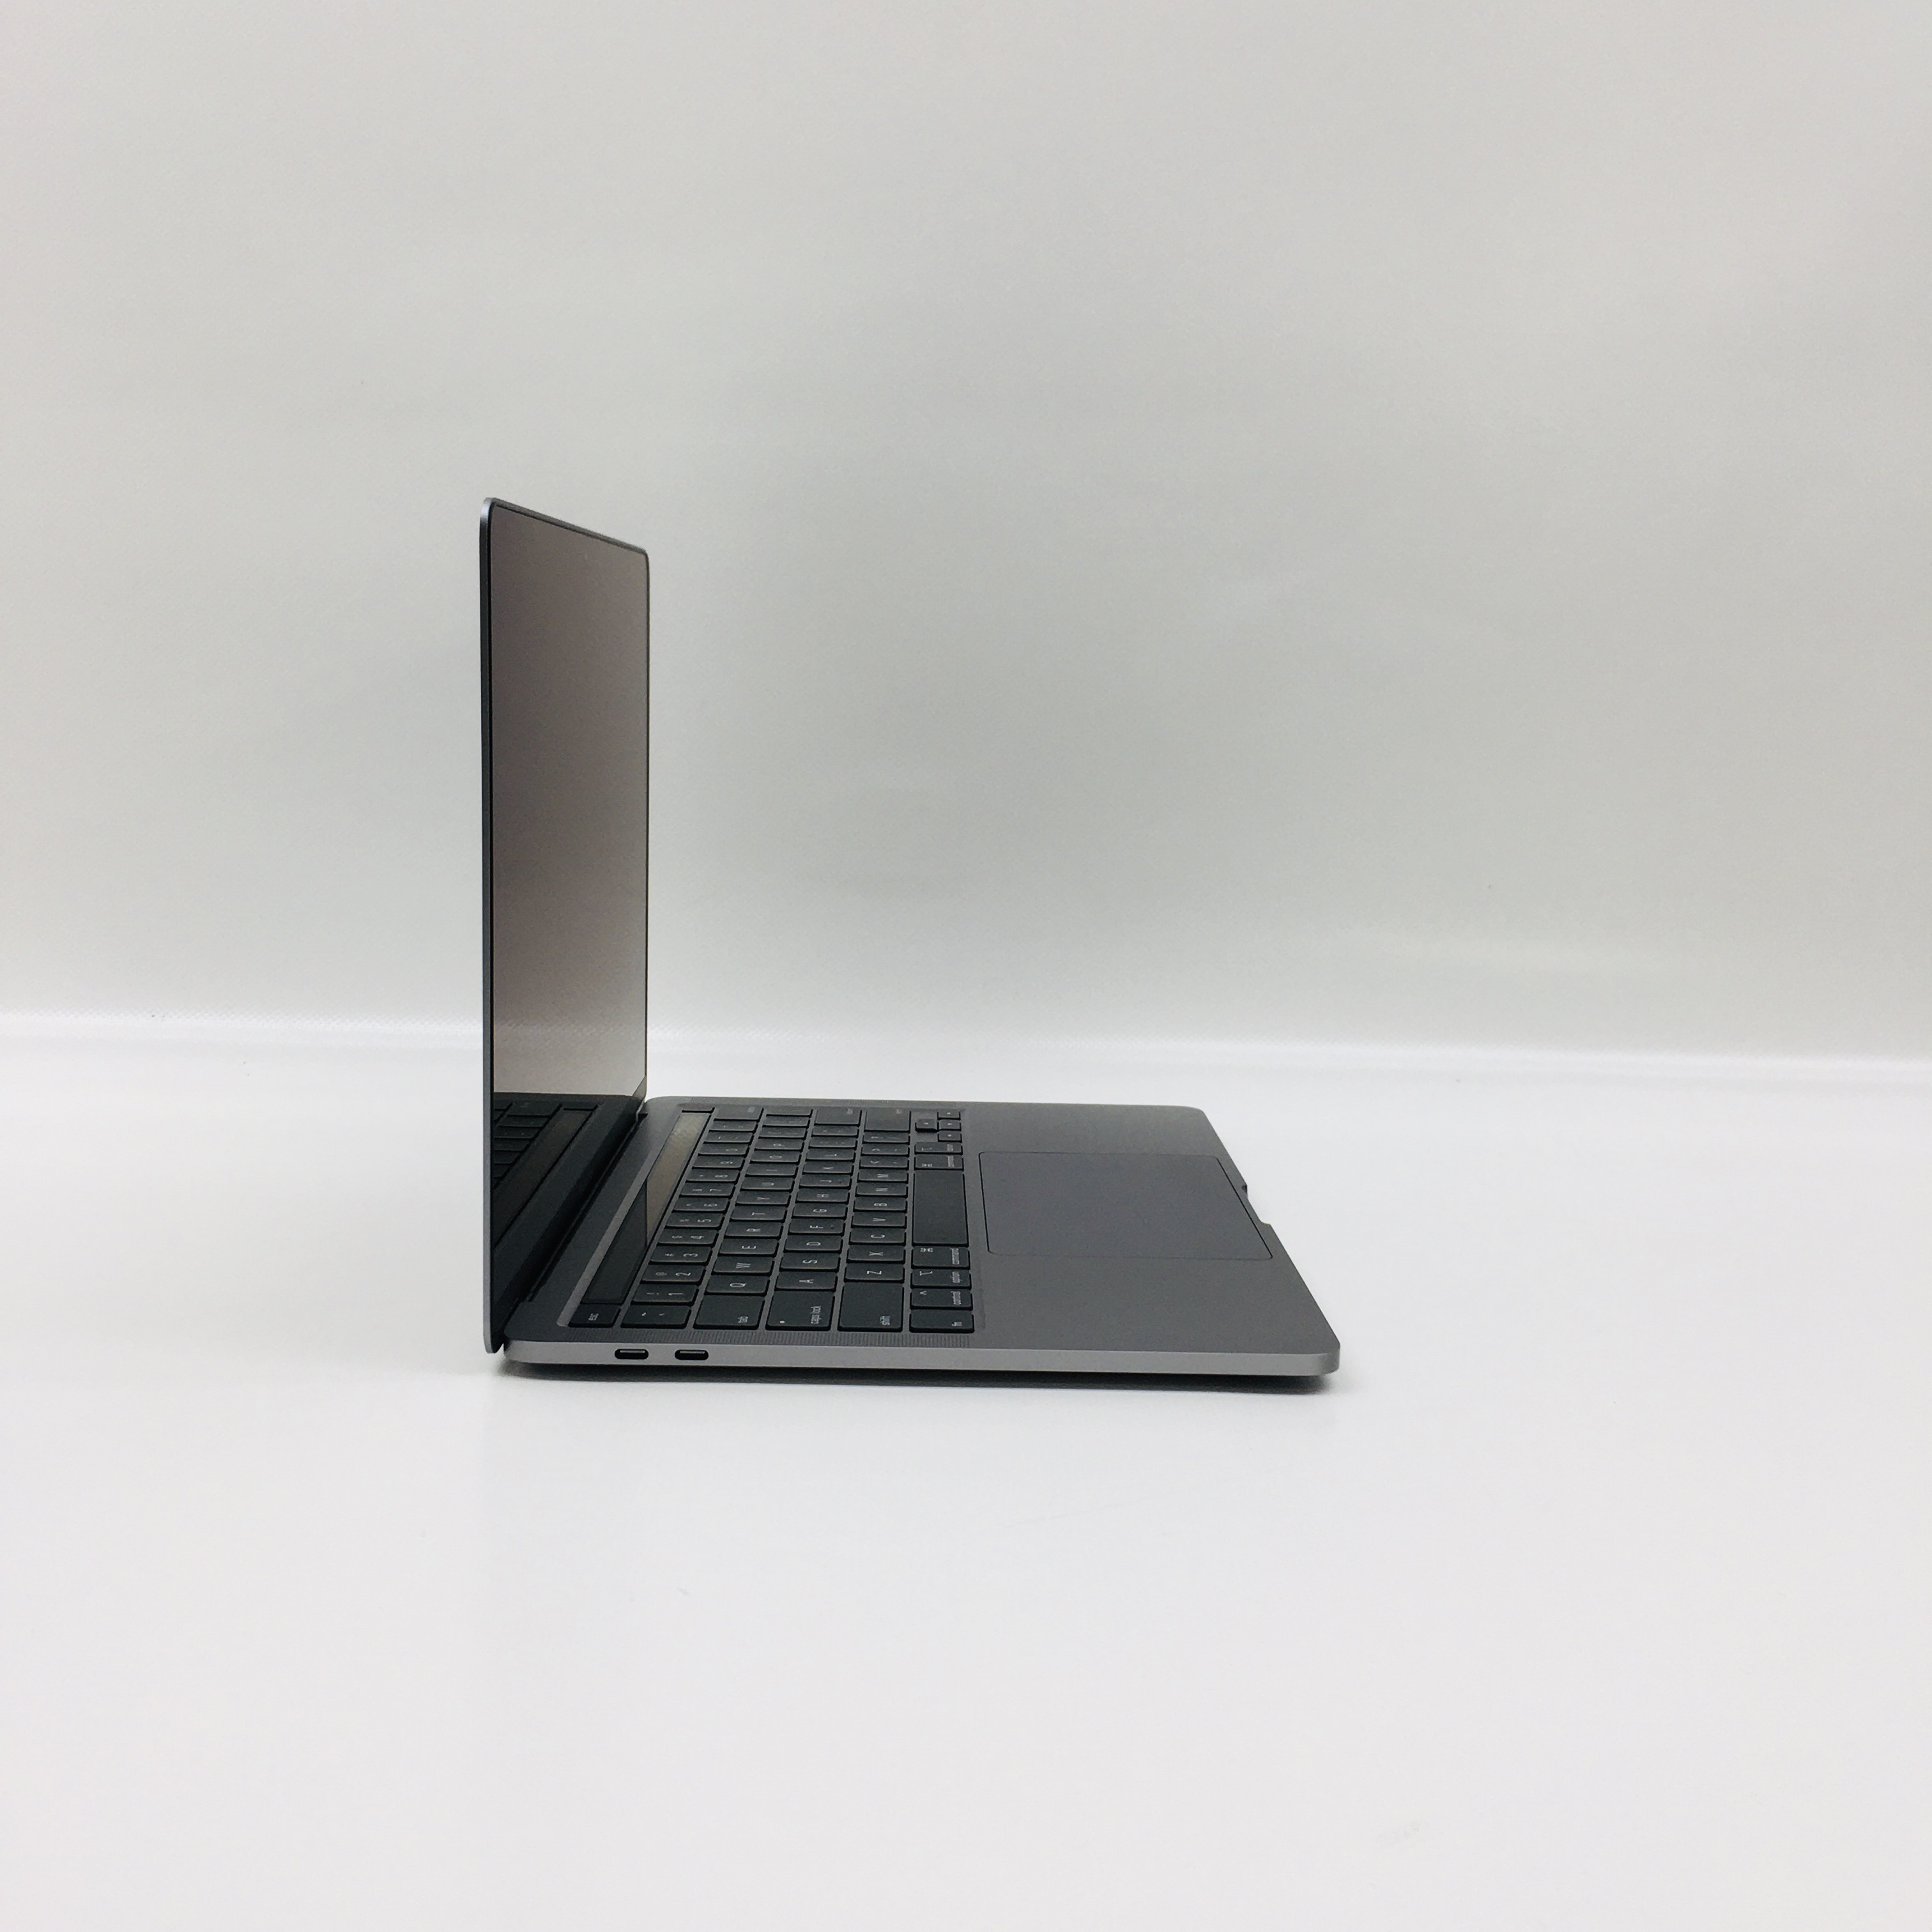 MacBook Pro 13" 2TBT Mid 2020 (Intel Quad-Core i5 1.4 GHz 8 GB RAM 512 GB SSD), Space Gray, Intel Quad-Core i5 1.4 GHz, 8 GB RAM, 512 GB SSD, image 2